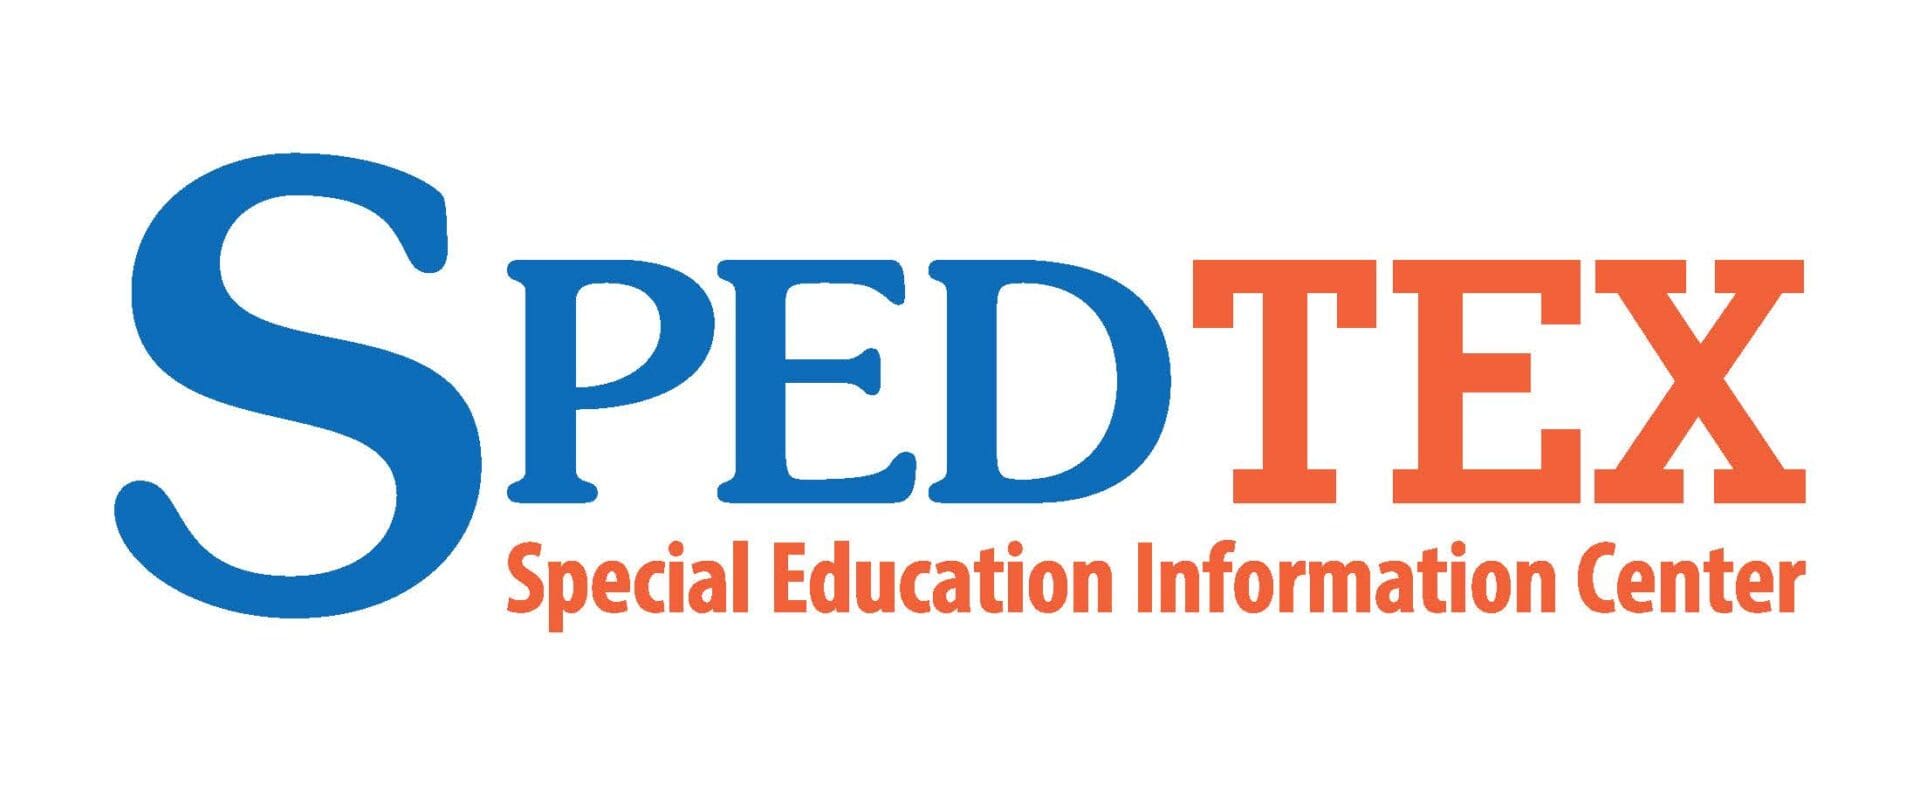 Speedtex special education information center logo.